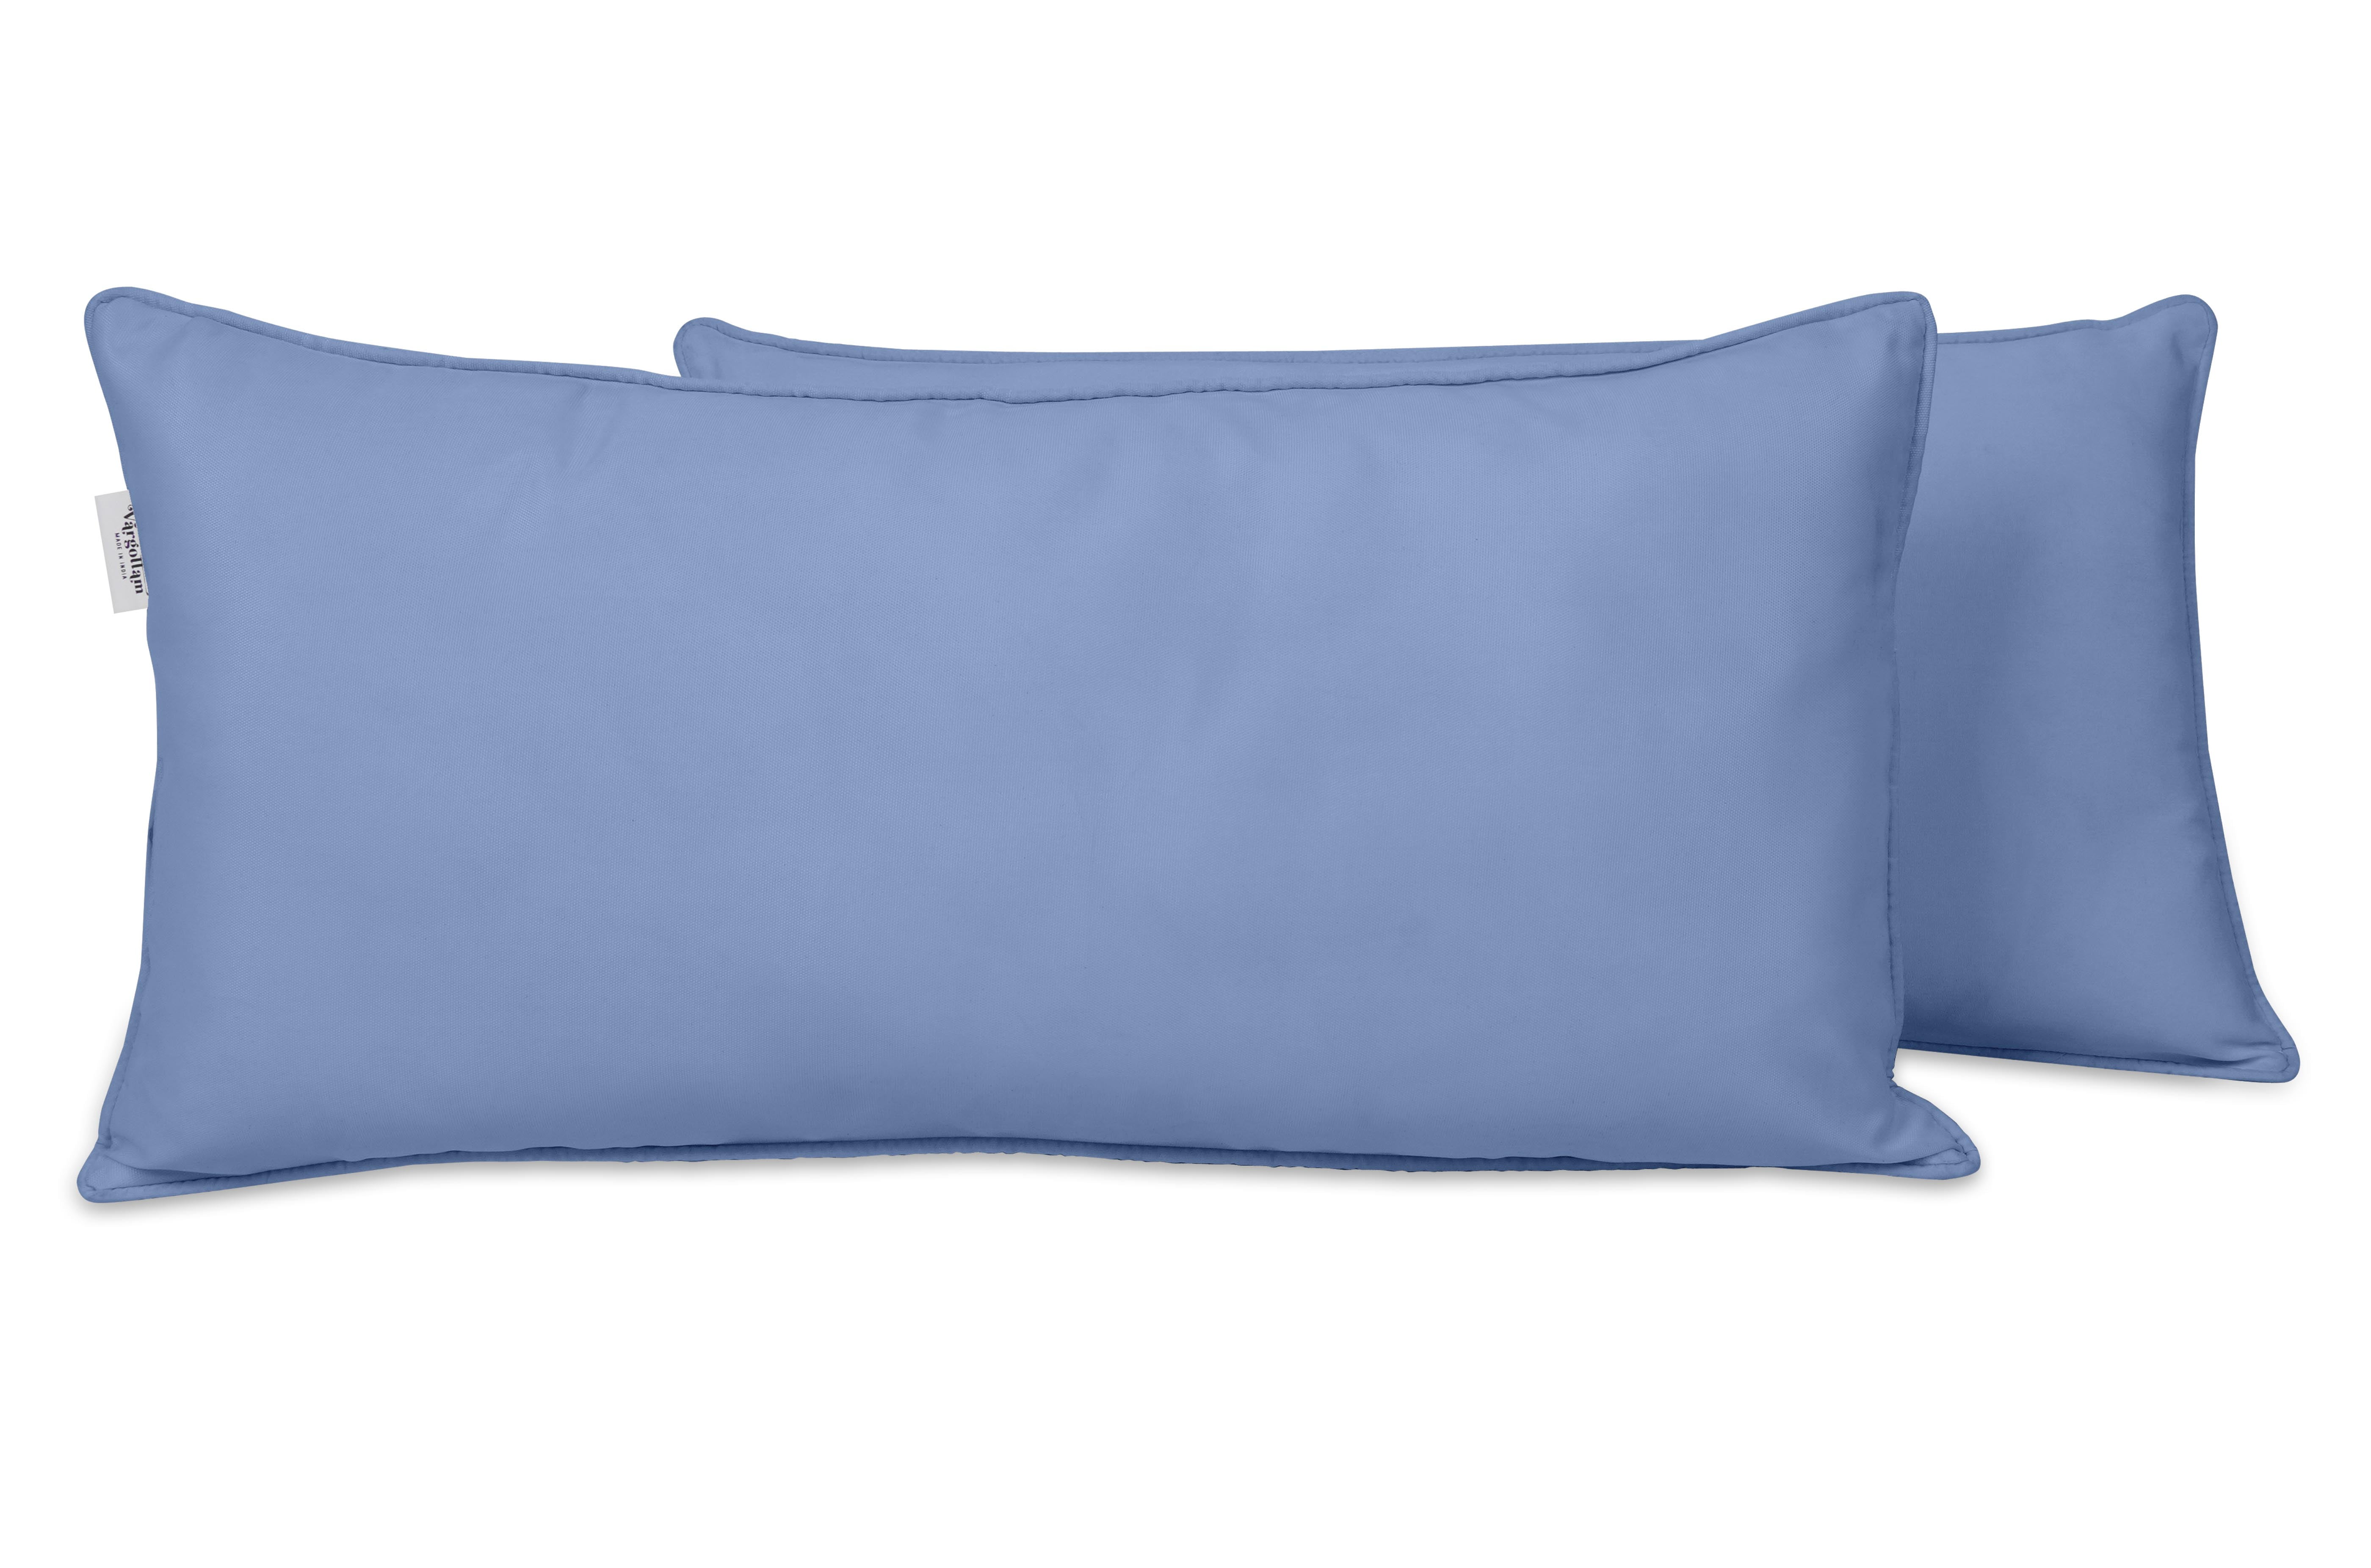 2 New Better Homes & Gardens 18x12 Outdoor Lumbar Pillow Sun & Water Resistant 